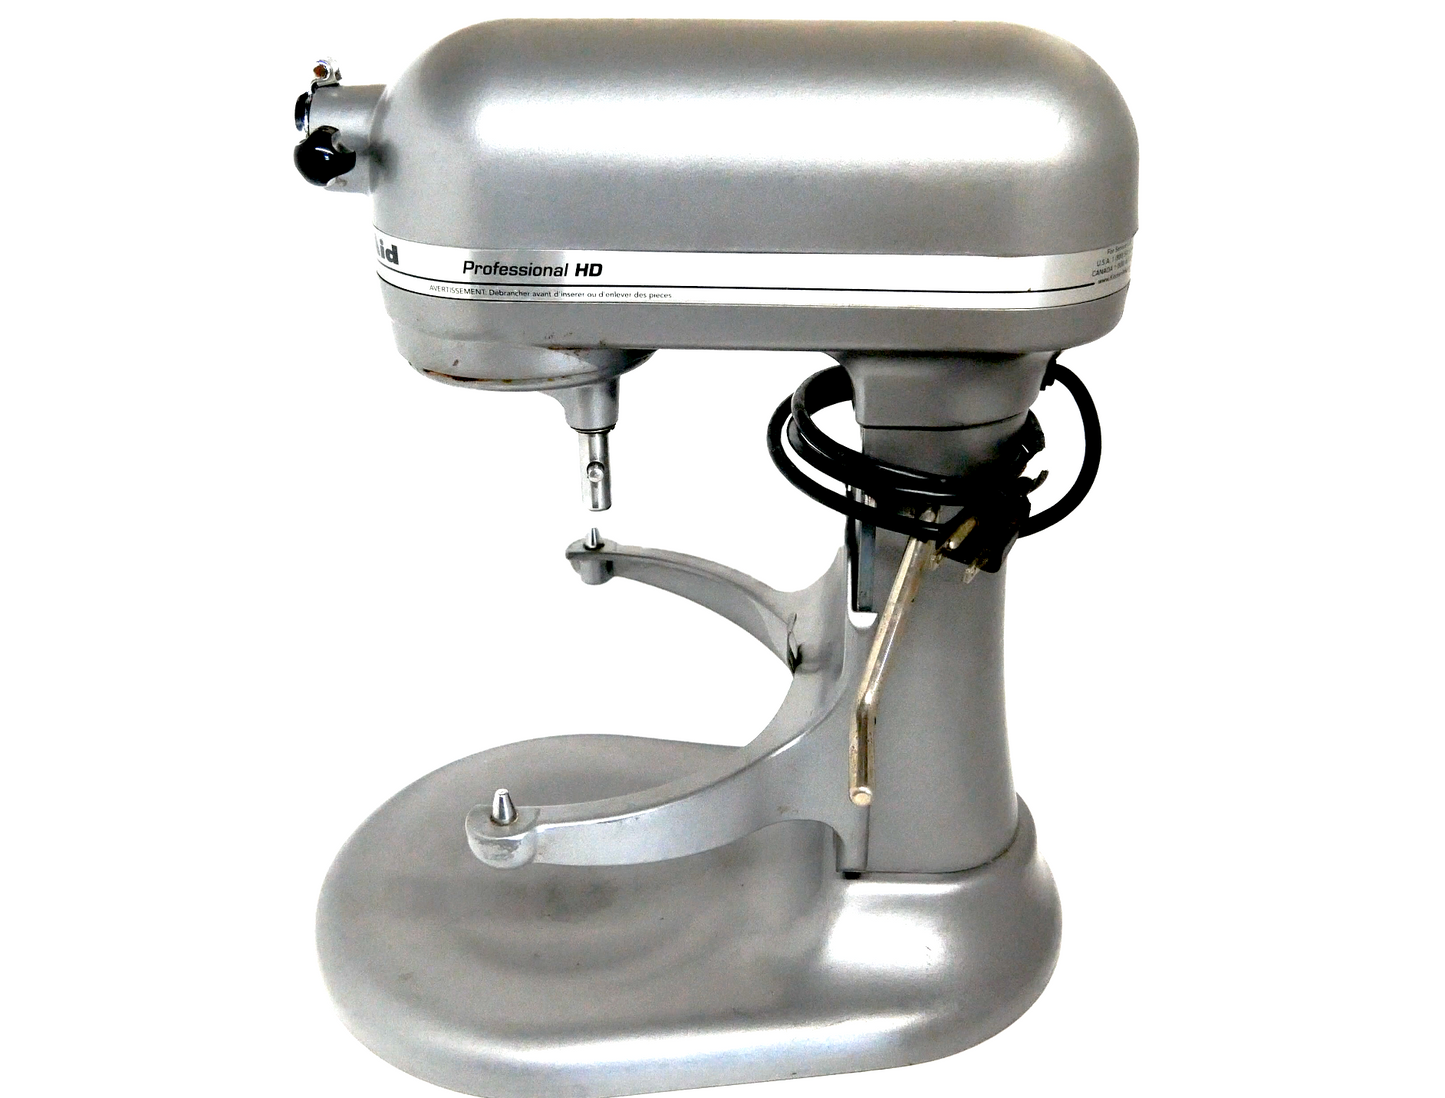 KitchenAid Professional HD 5 QT Stand Mixer Lift Bowl White Quart